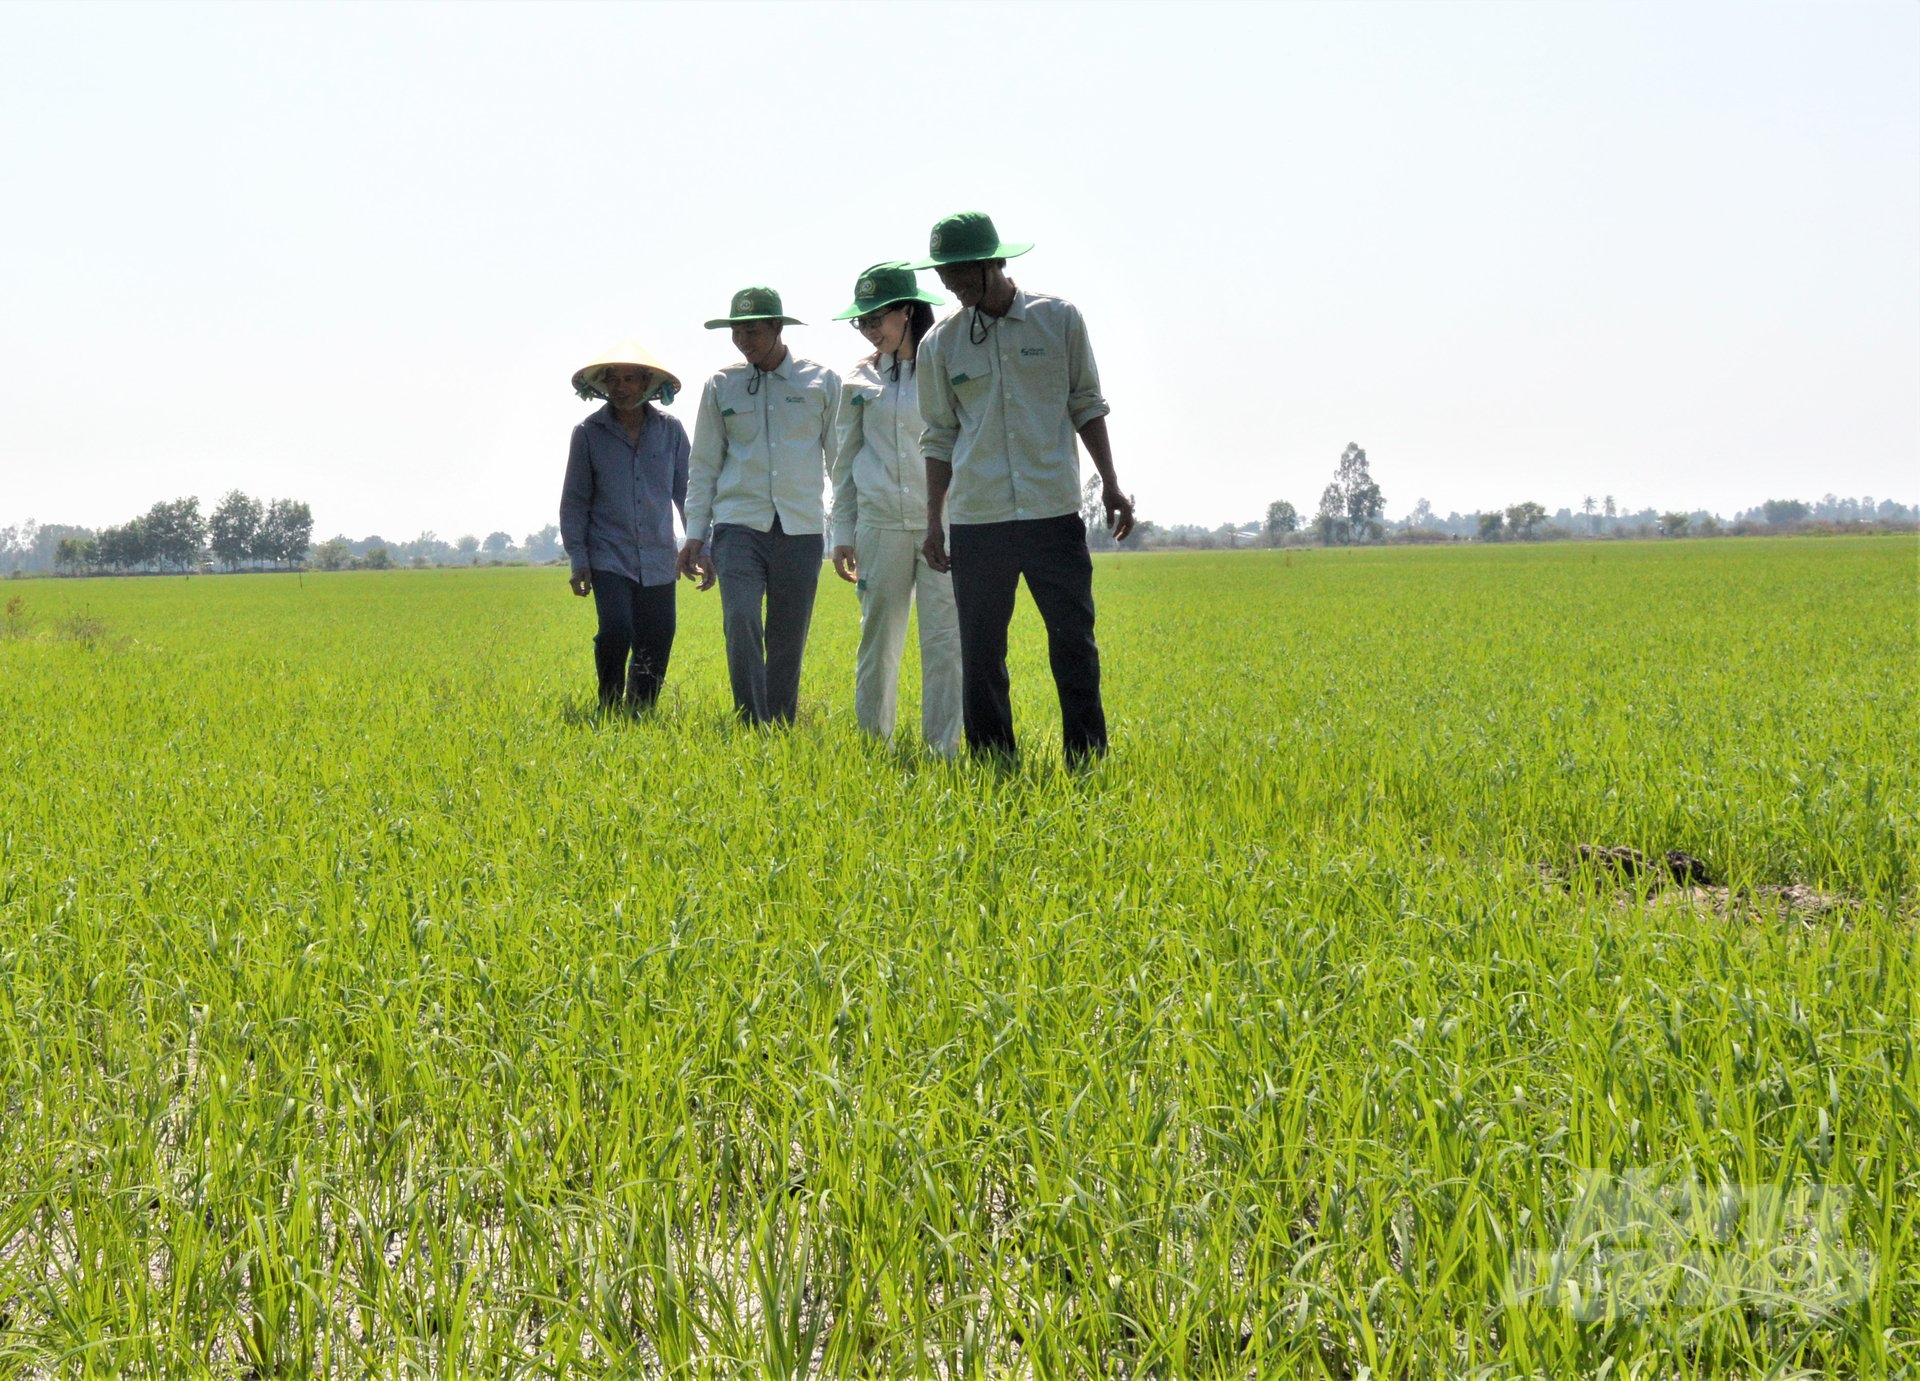 Lực lượng khuyến nông cộng đồng hỗ trợ nông dân áp dụng các tiêu chuẩn sản xuất lúa bền vững, thích ứng với biến đổi khí hậu, giảm phát thải khí nhà kính, nâng cao thu nhập. Ảnh: Trung Chánh.